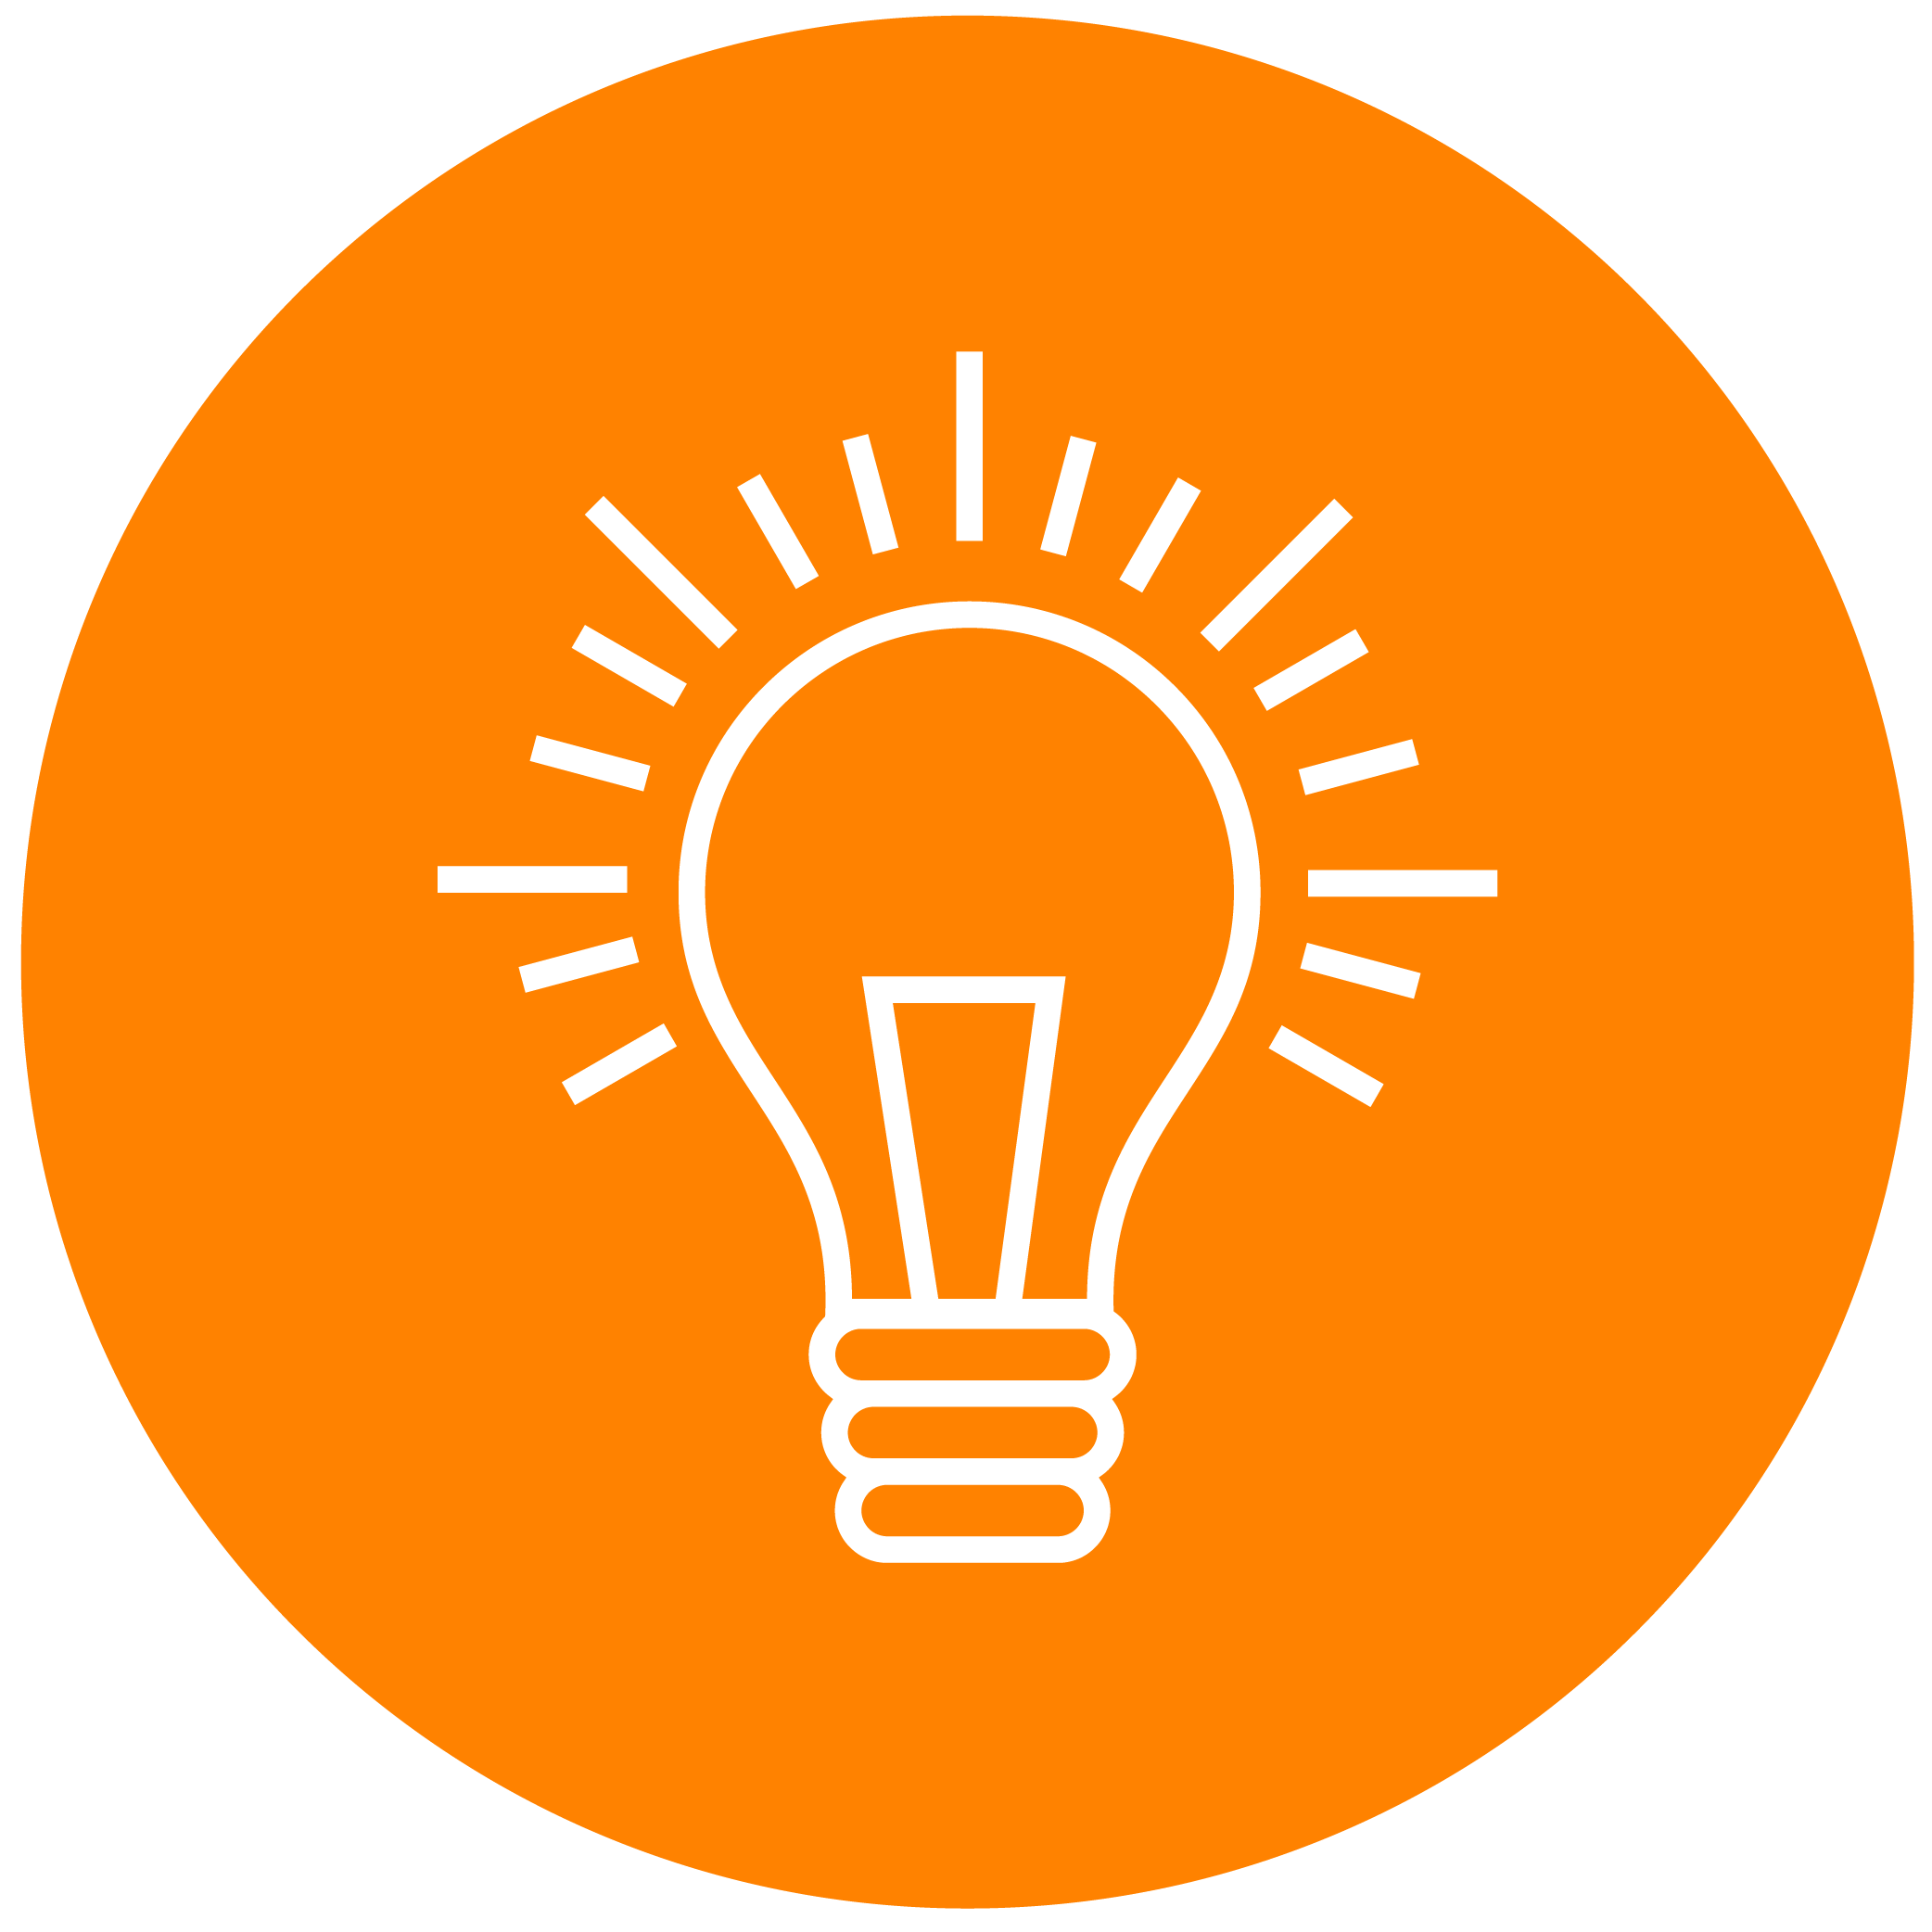 White lightbulb icon on orange background